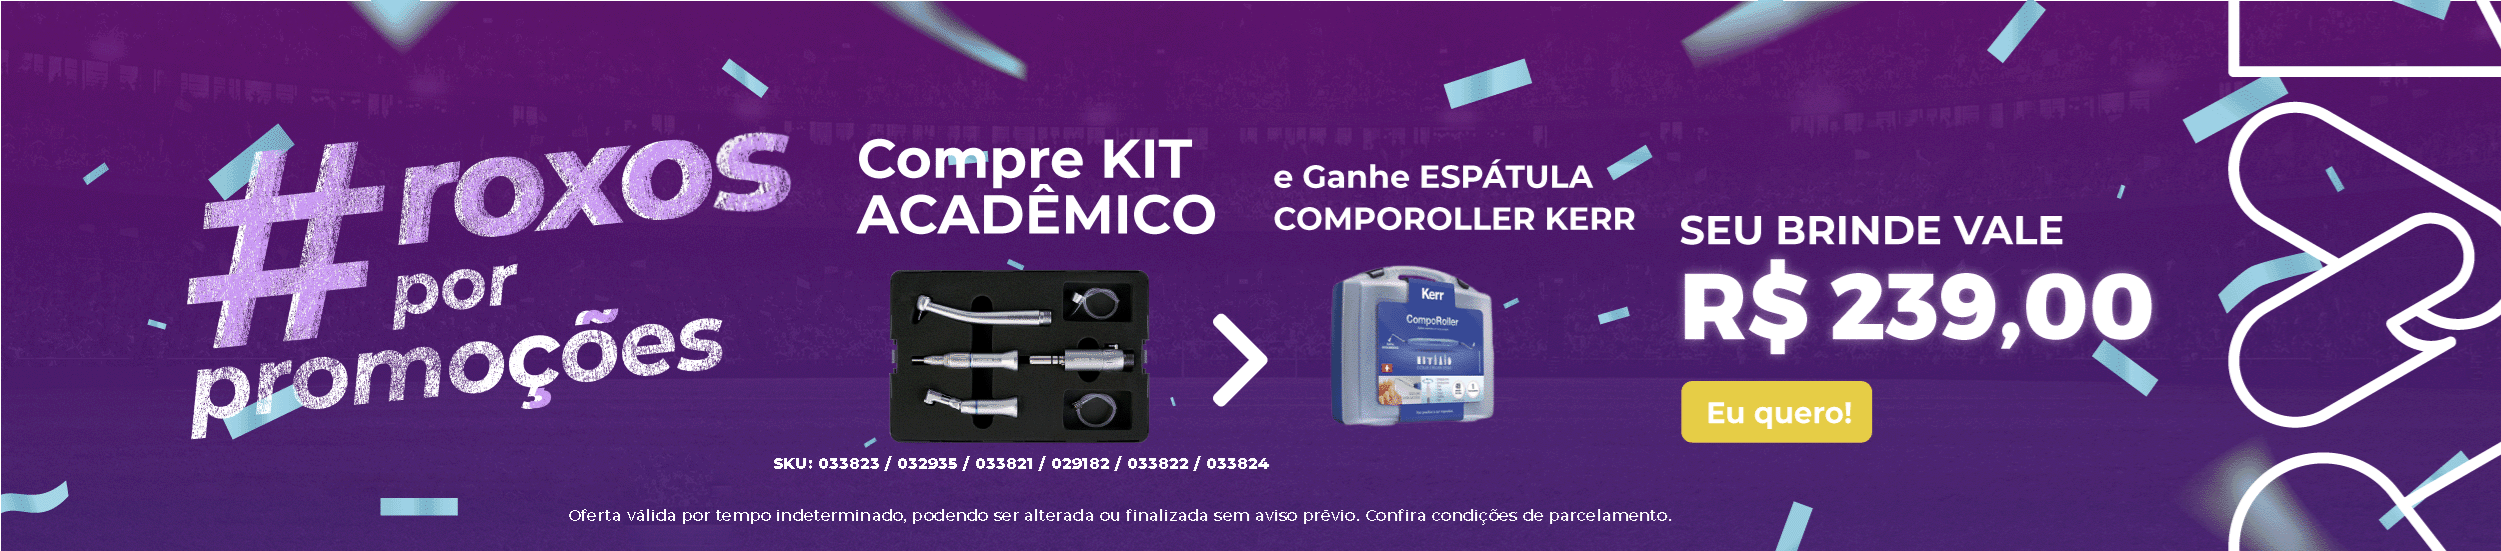 Kit Acadêmico